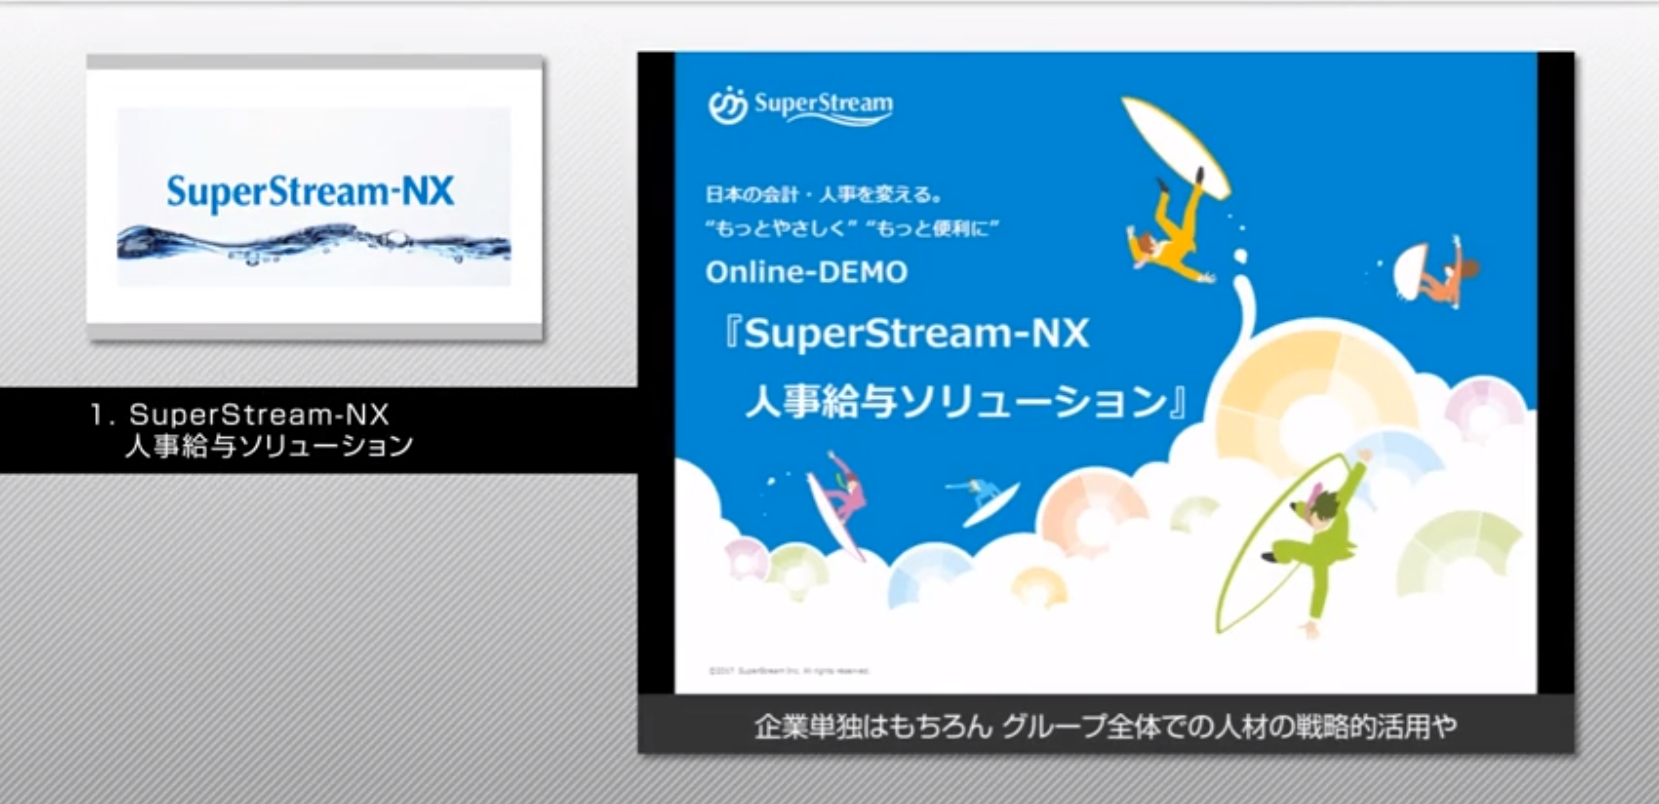 SuperStream-NX Ver.2.0 人事給与ソリューション